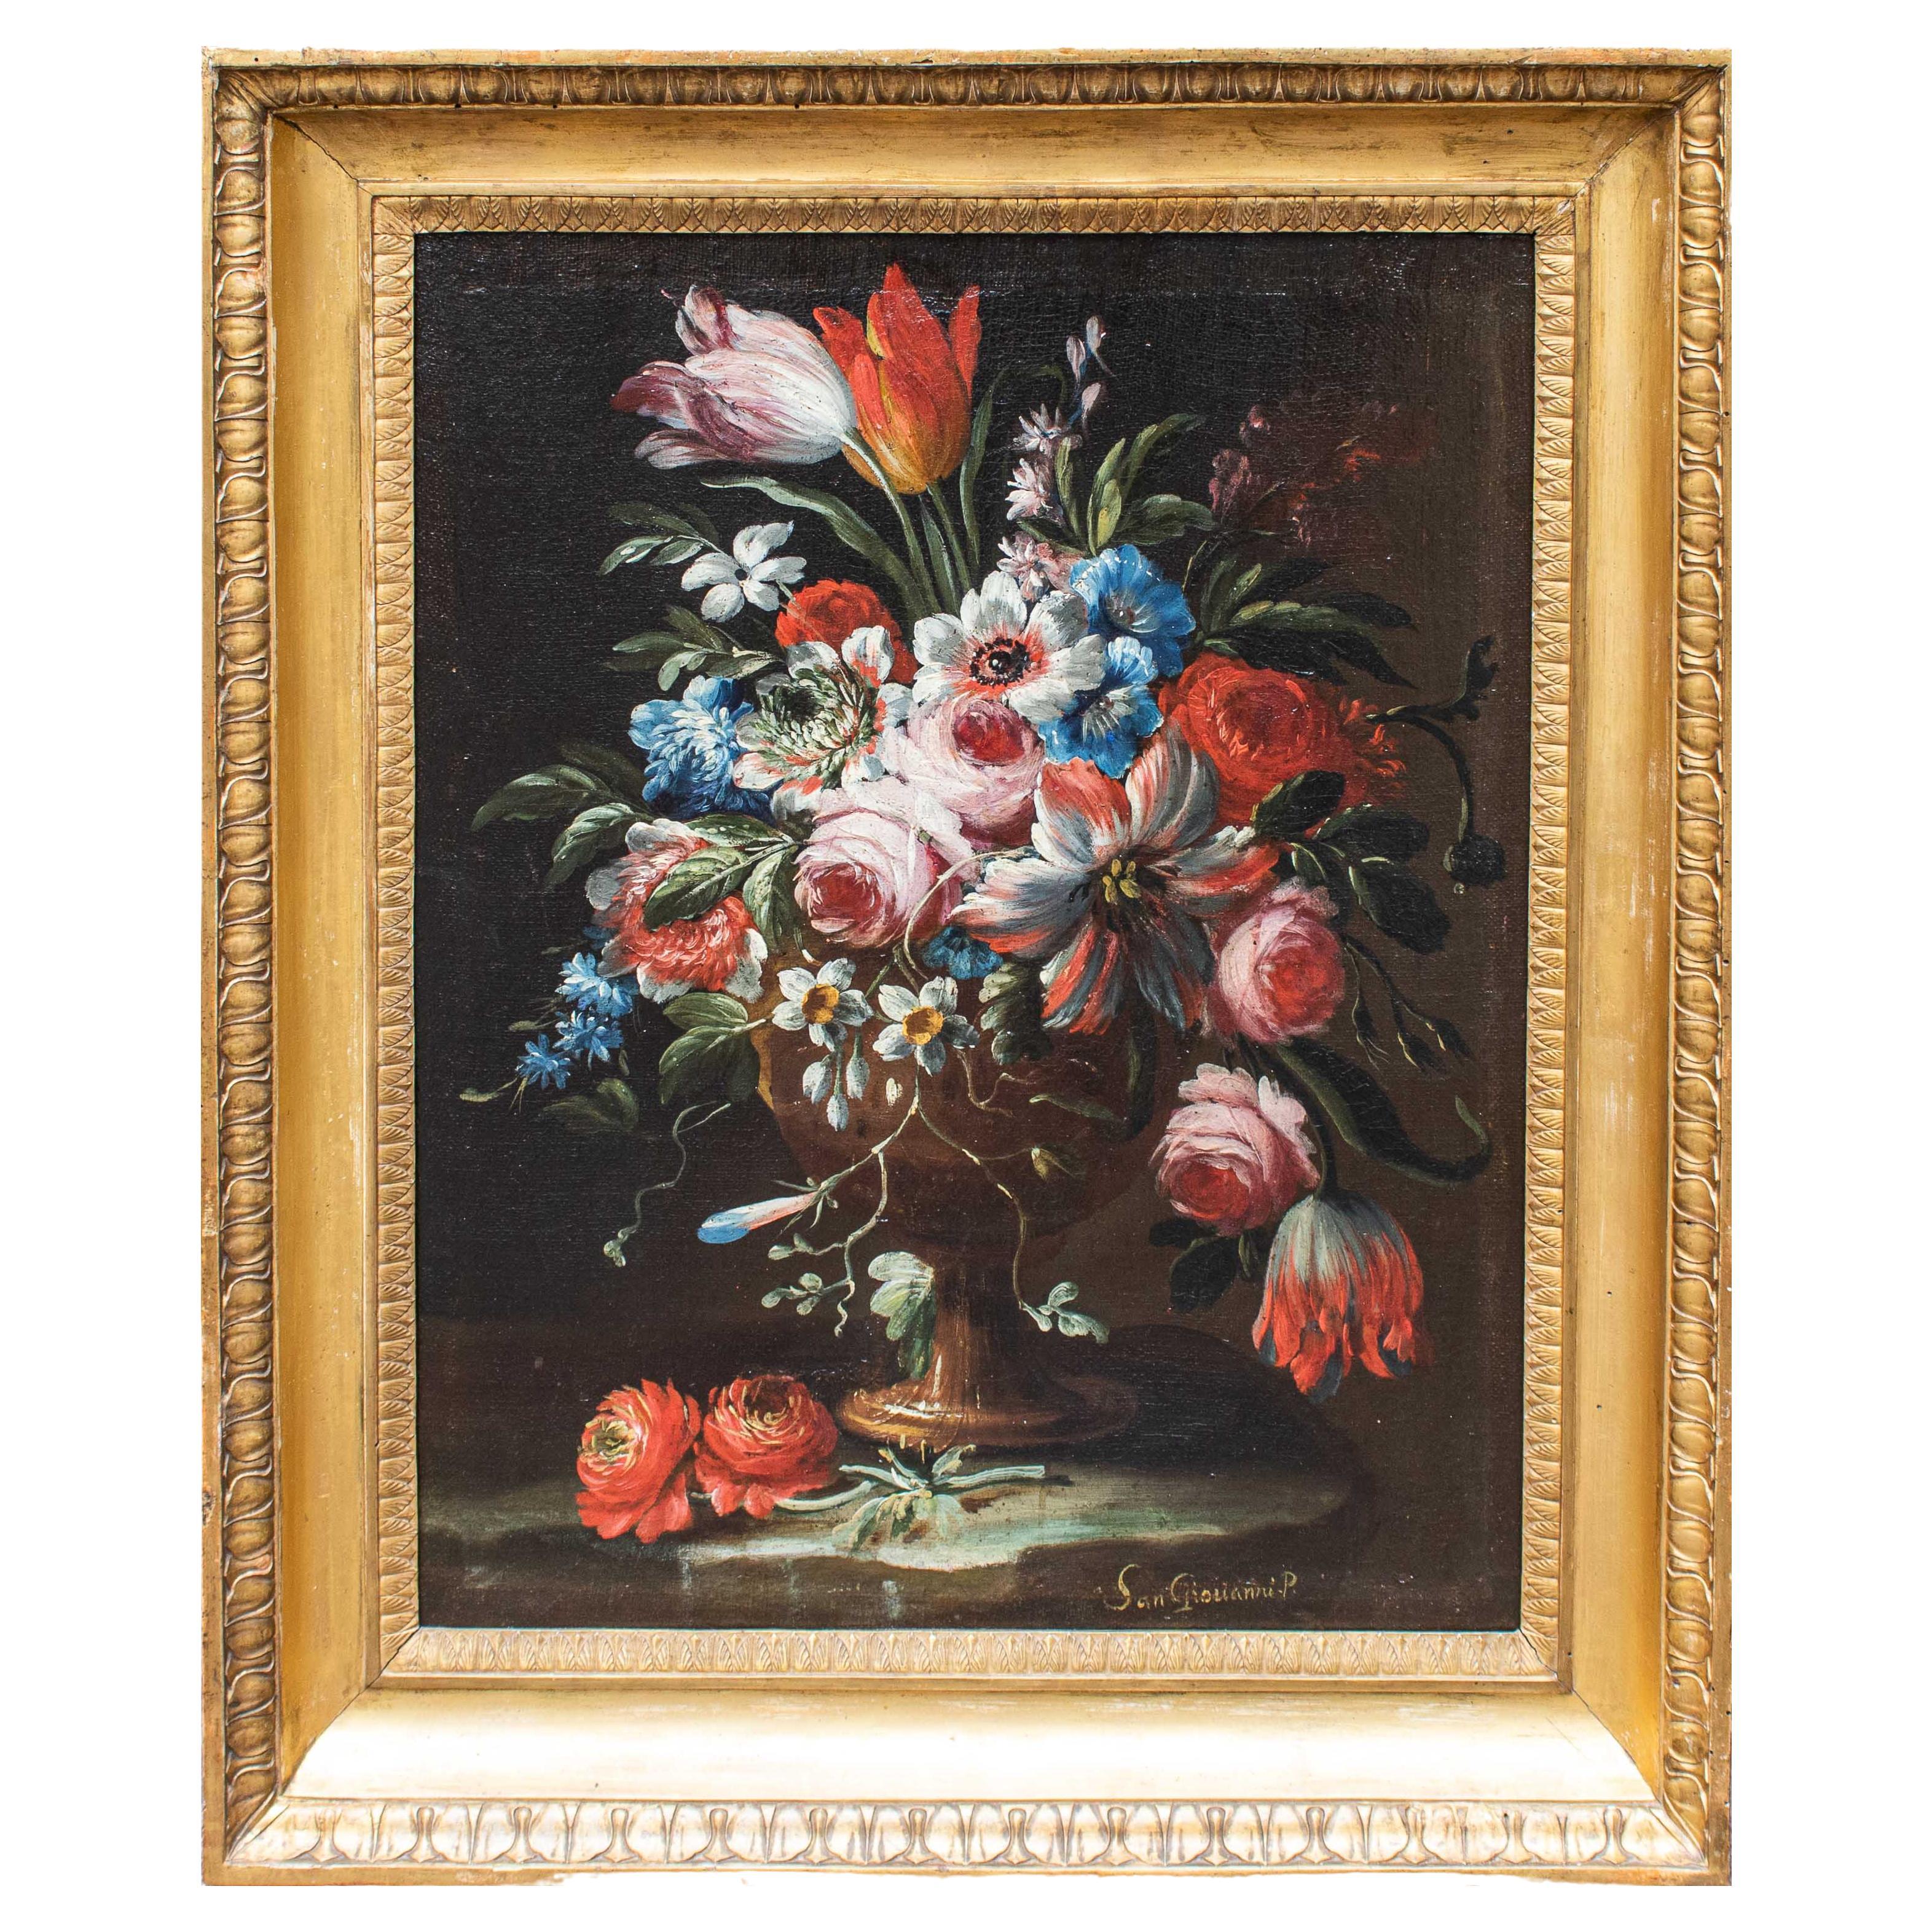 Nature morte avec vase de fleurs, peinture à l'huile sur toile, 17e-18e siècle